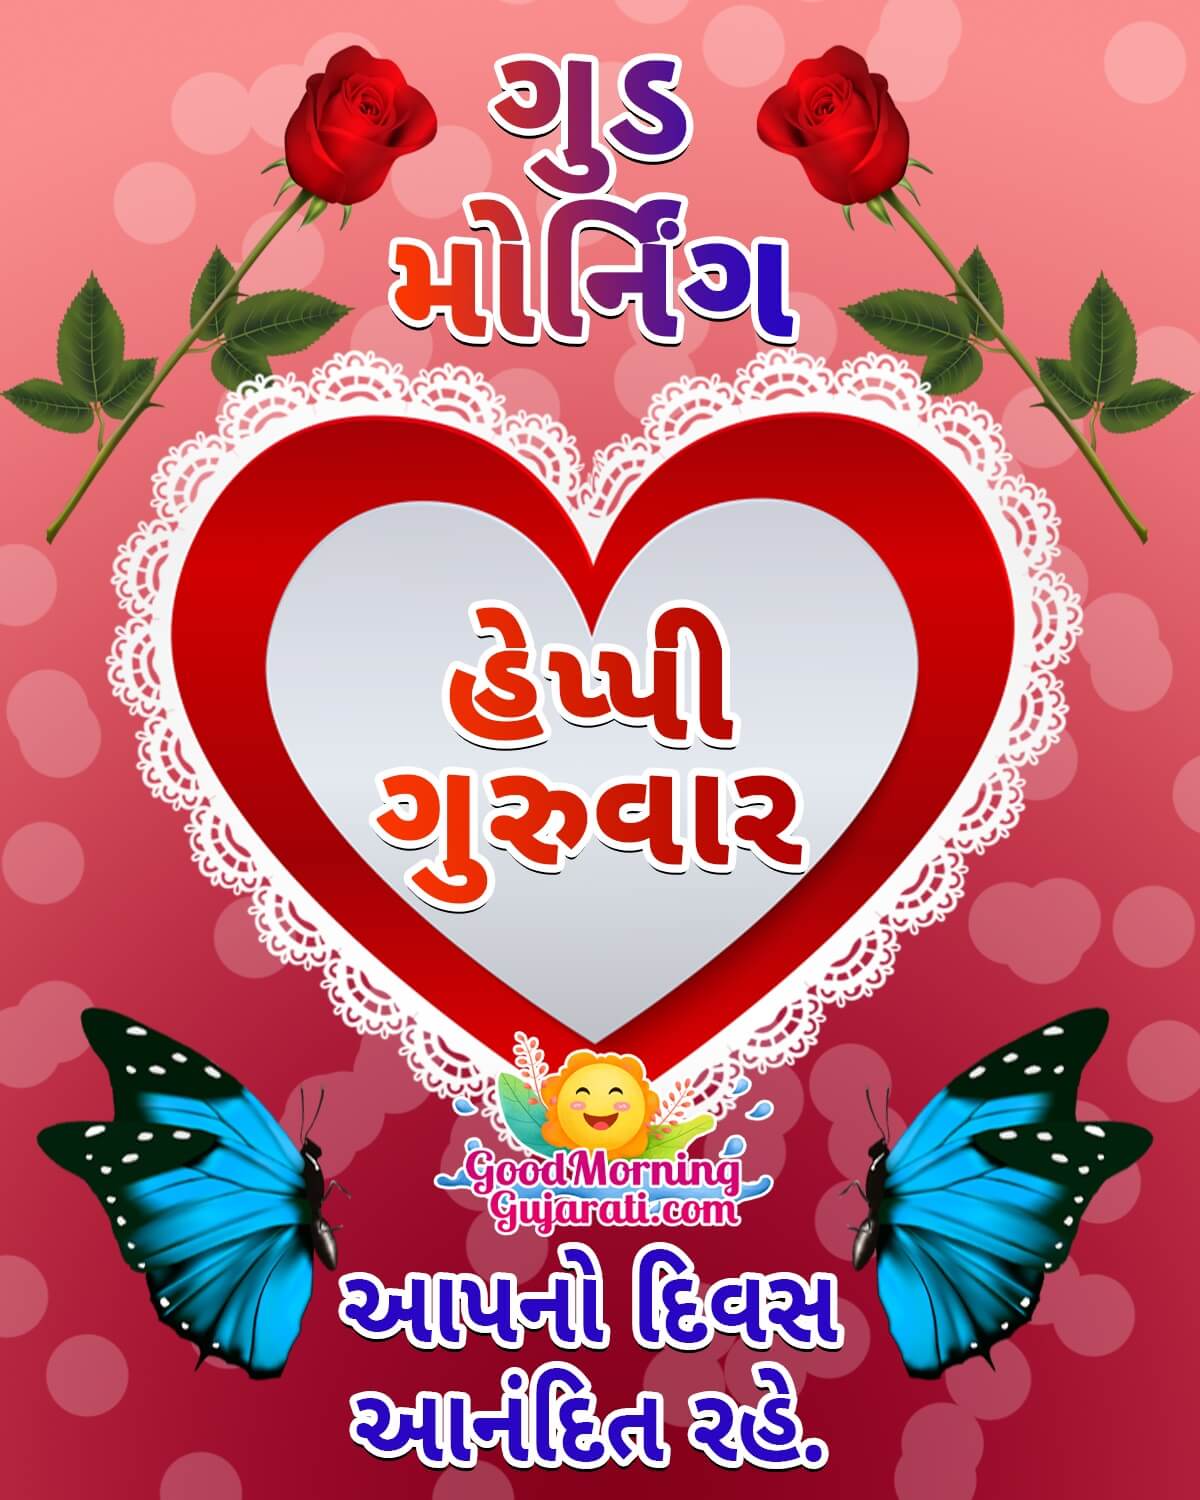 Good Morning Happy Guruwar Wish Image